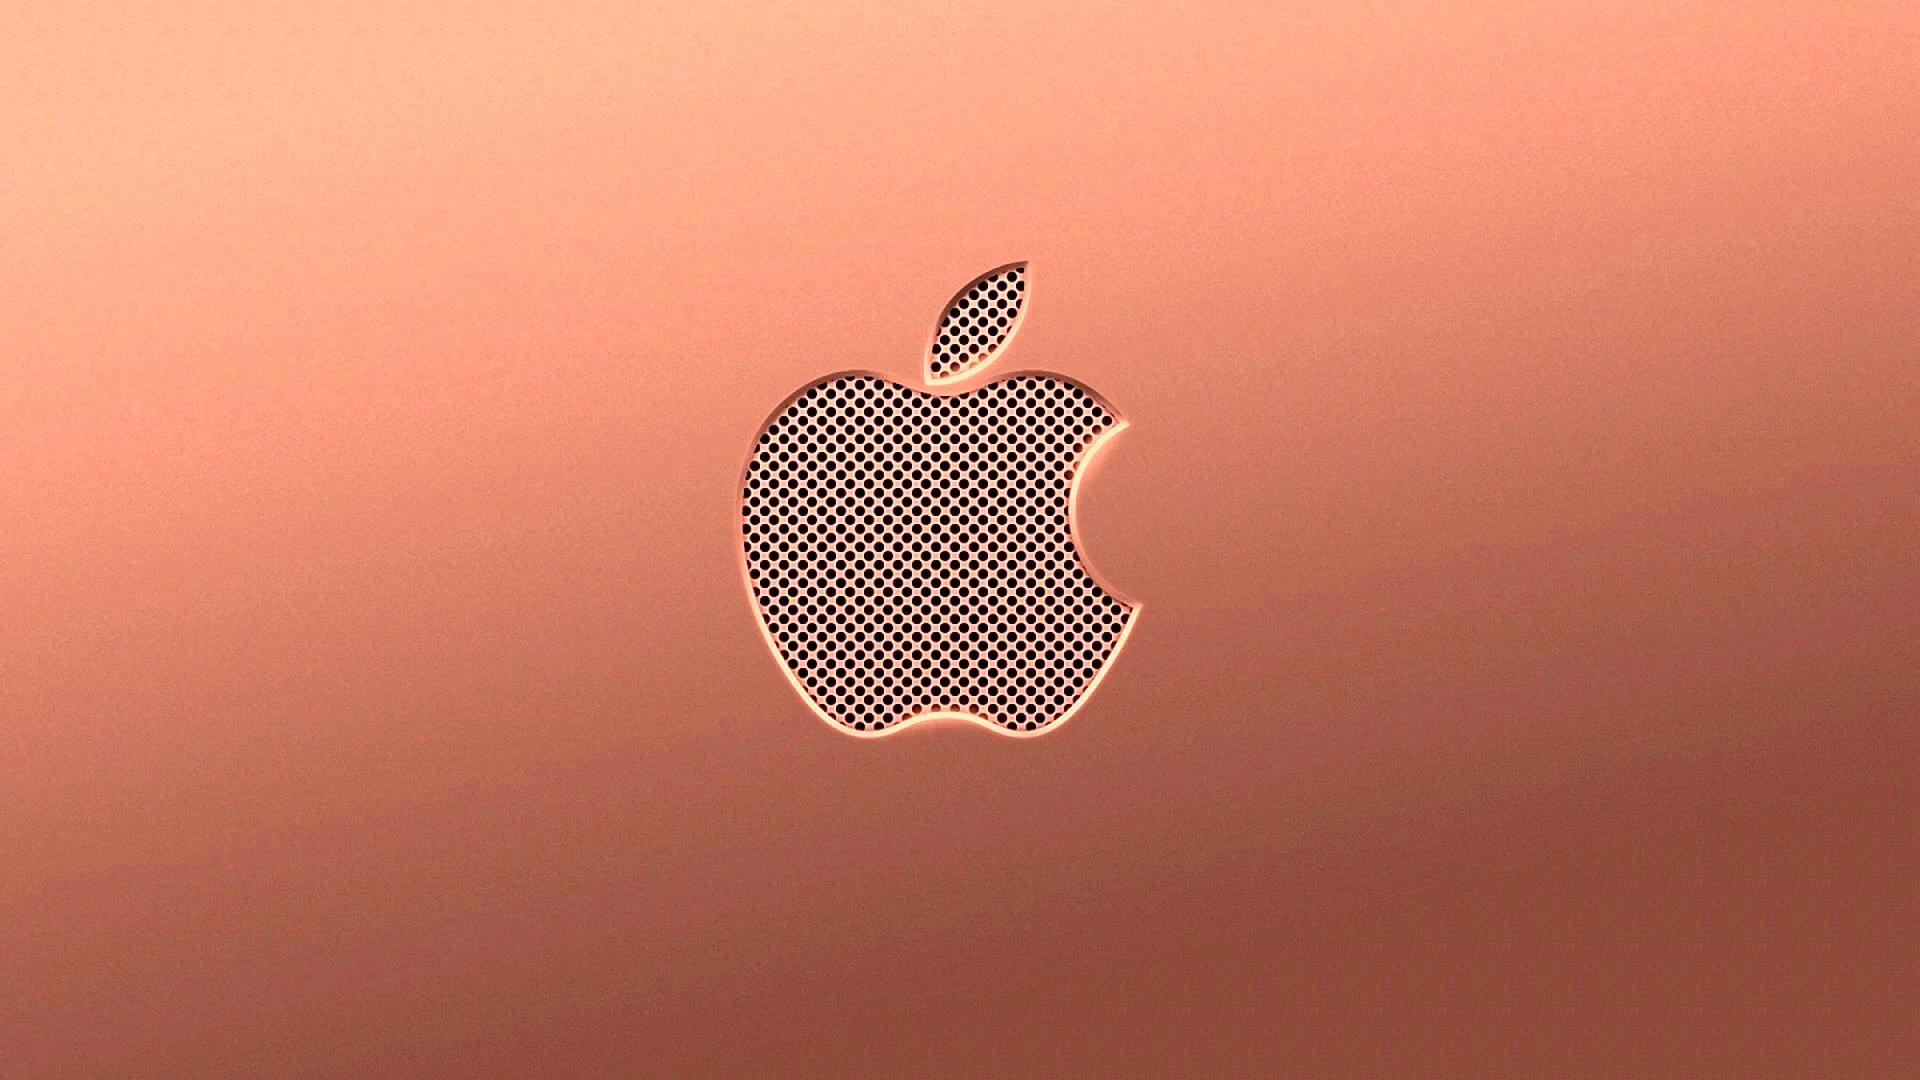 Apple Hd 4k Wallpaper